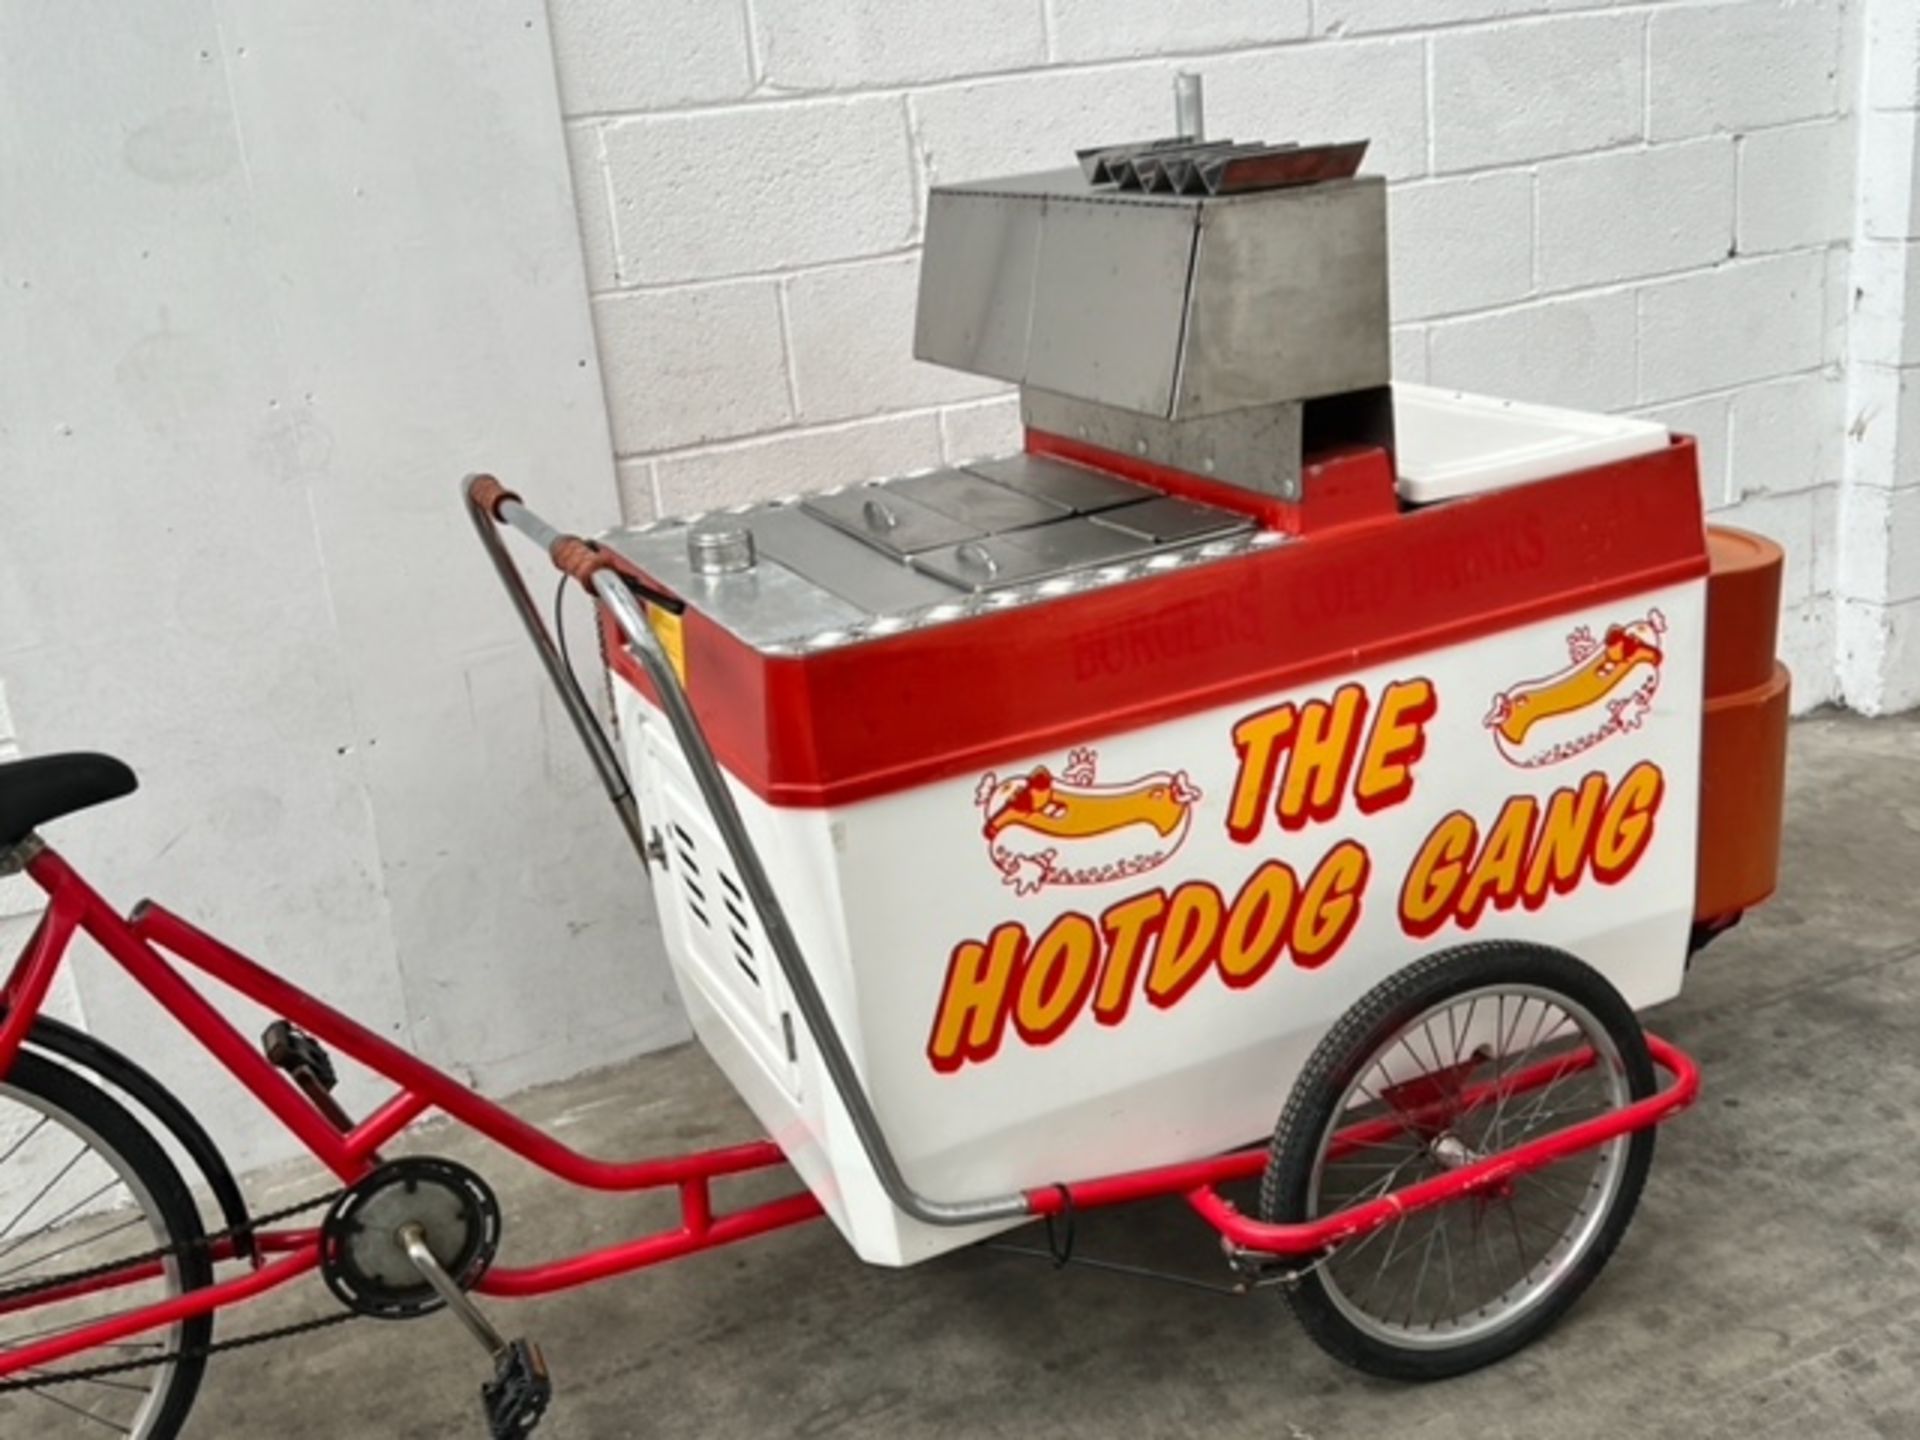 Hot Dog Catering Bike *NO VAT* - Image 3 of 10